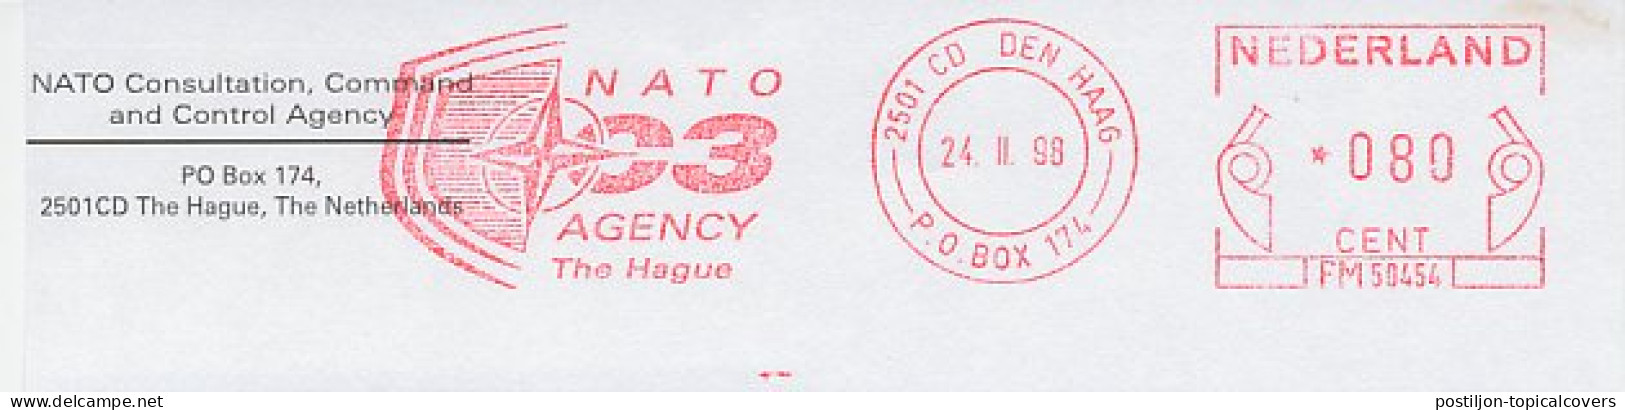 Meter Top Cut Netherlands 1998 NATO C3 Agency - NATO